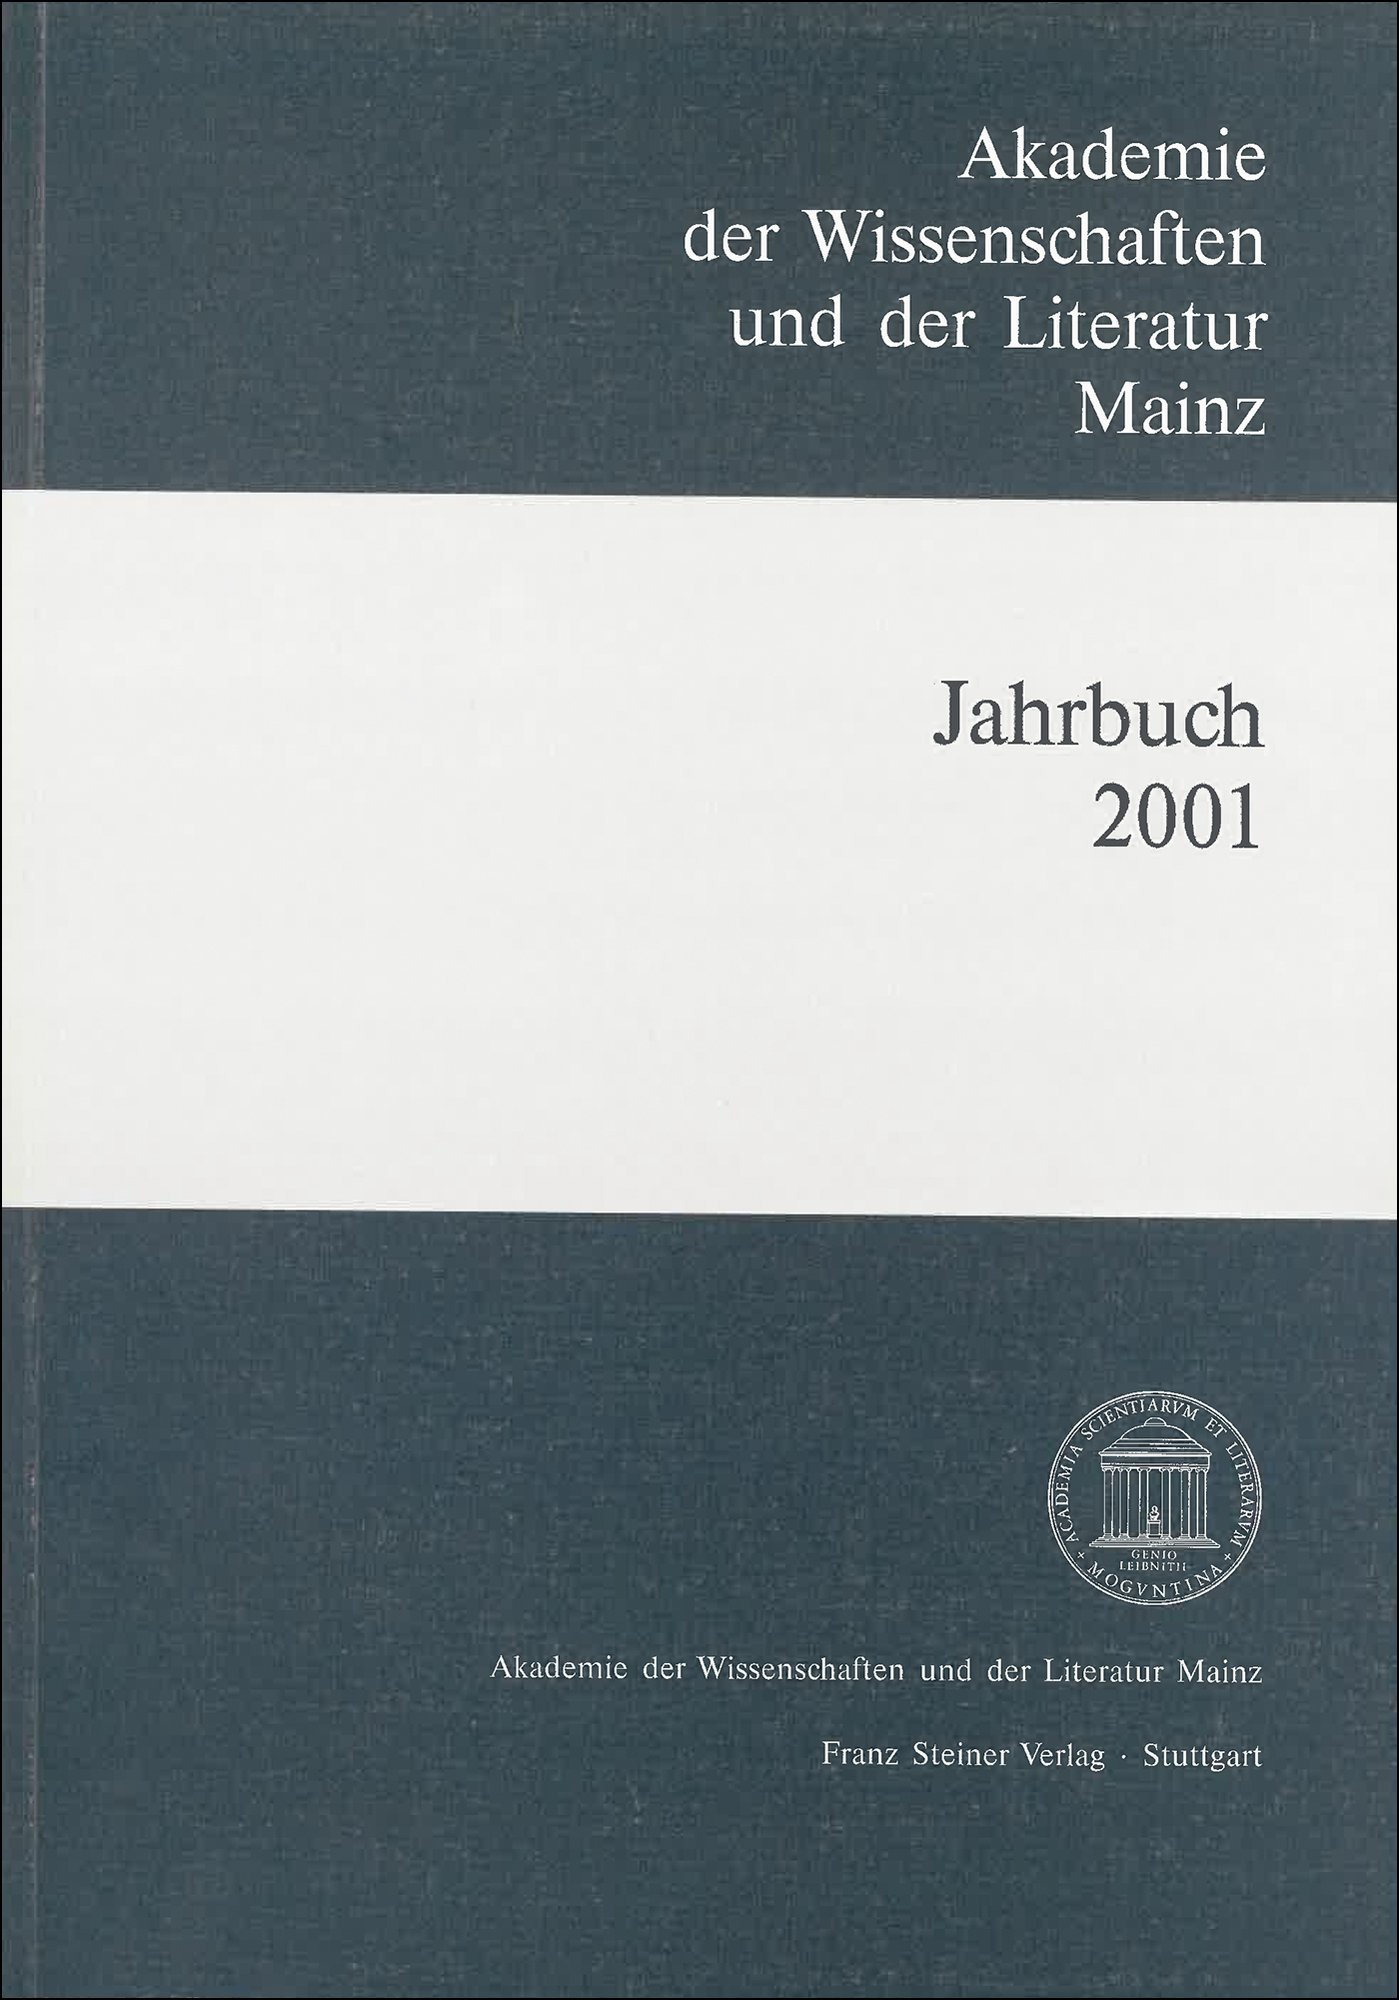 Akademie der Wissenschaften und der Literatur Mainz – Jahrbuch 52 (2001)